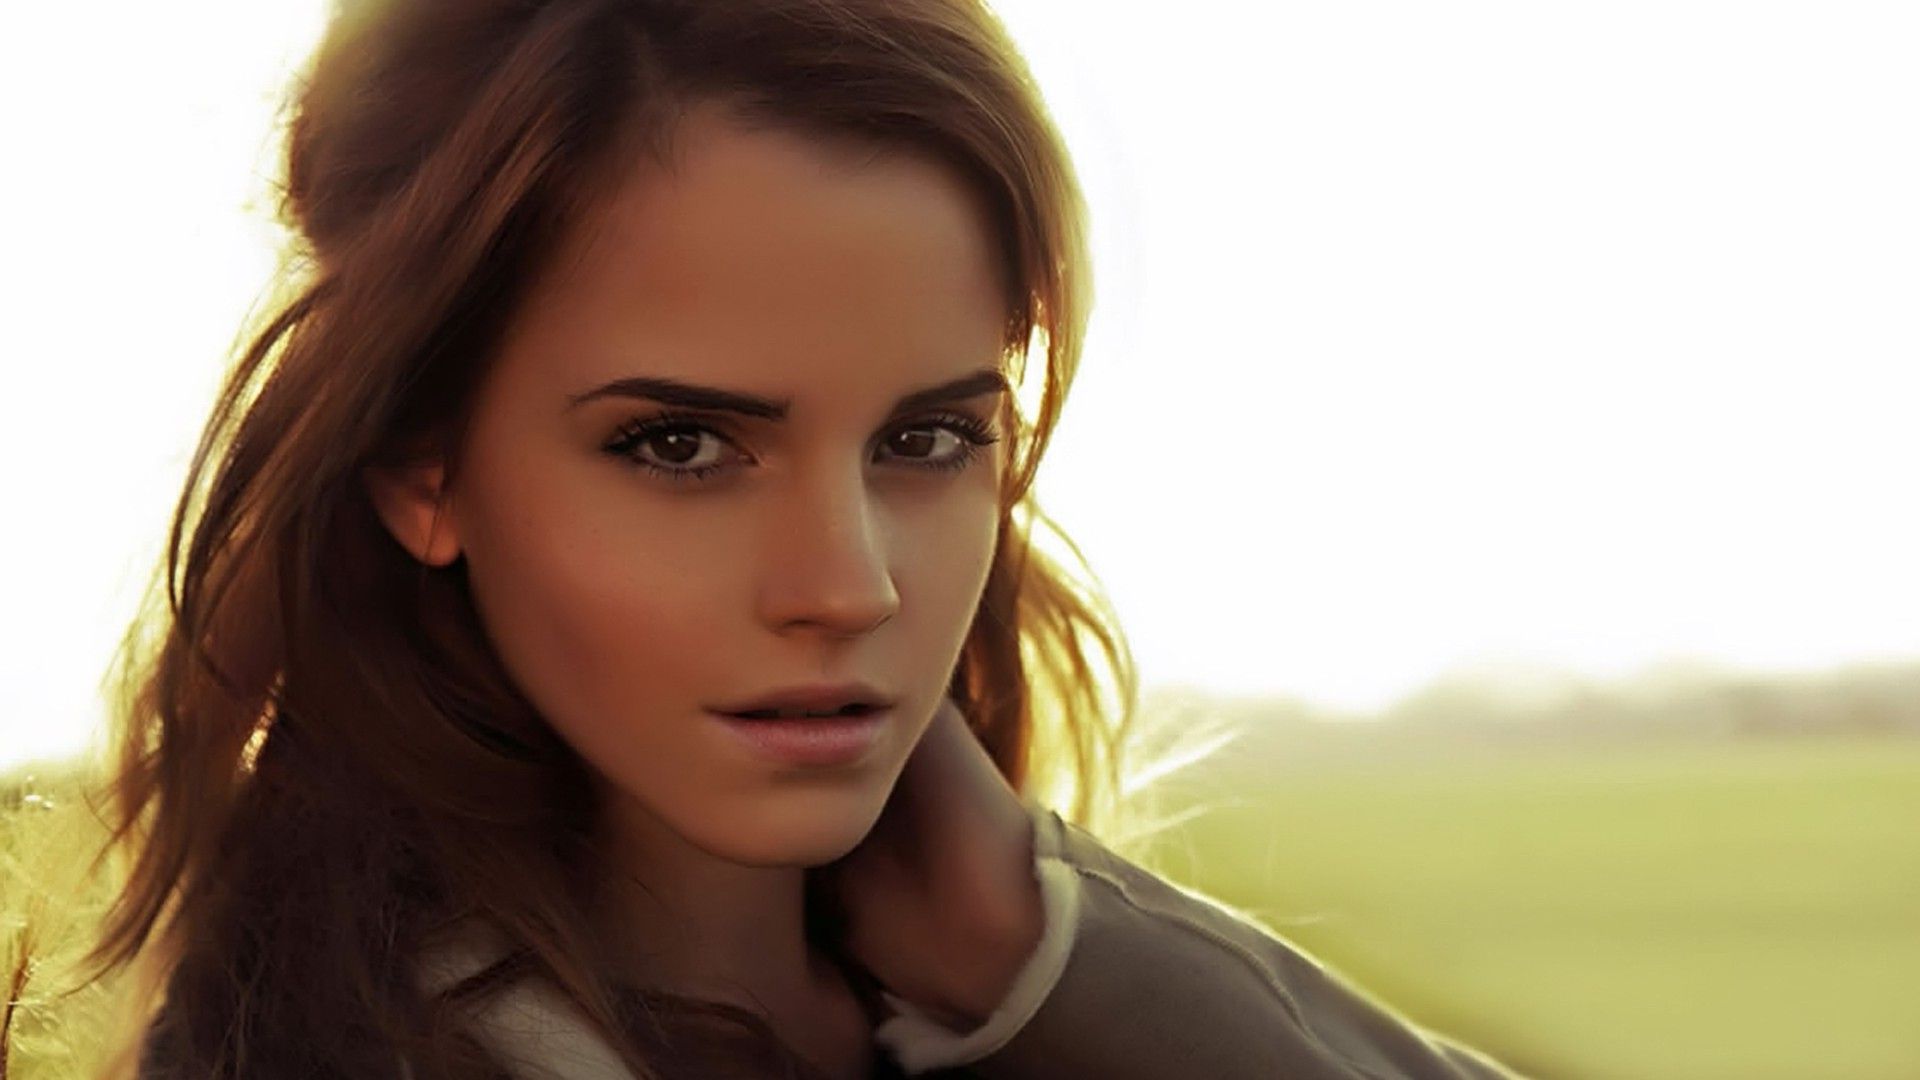 Fondos de pantalla de Emma Watson - Los mejores fondos gratuitos de Emma Watson